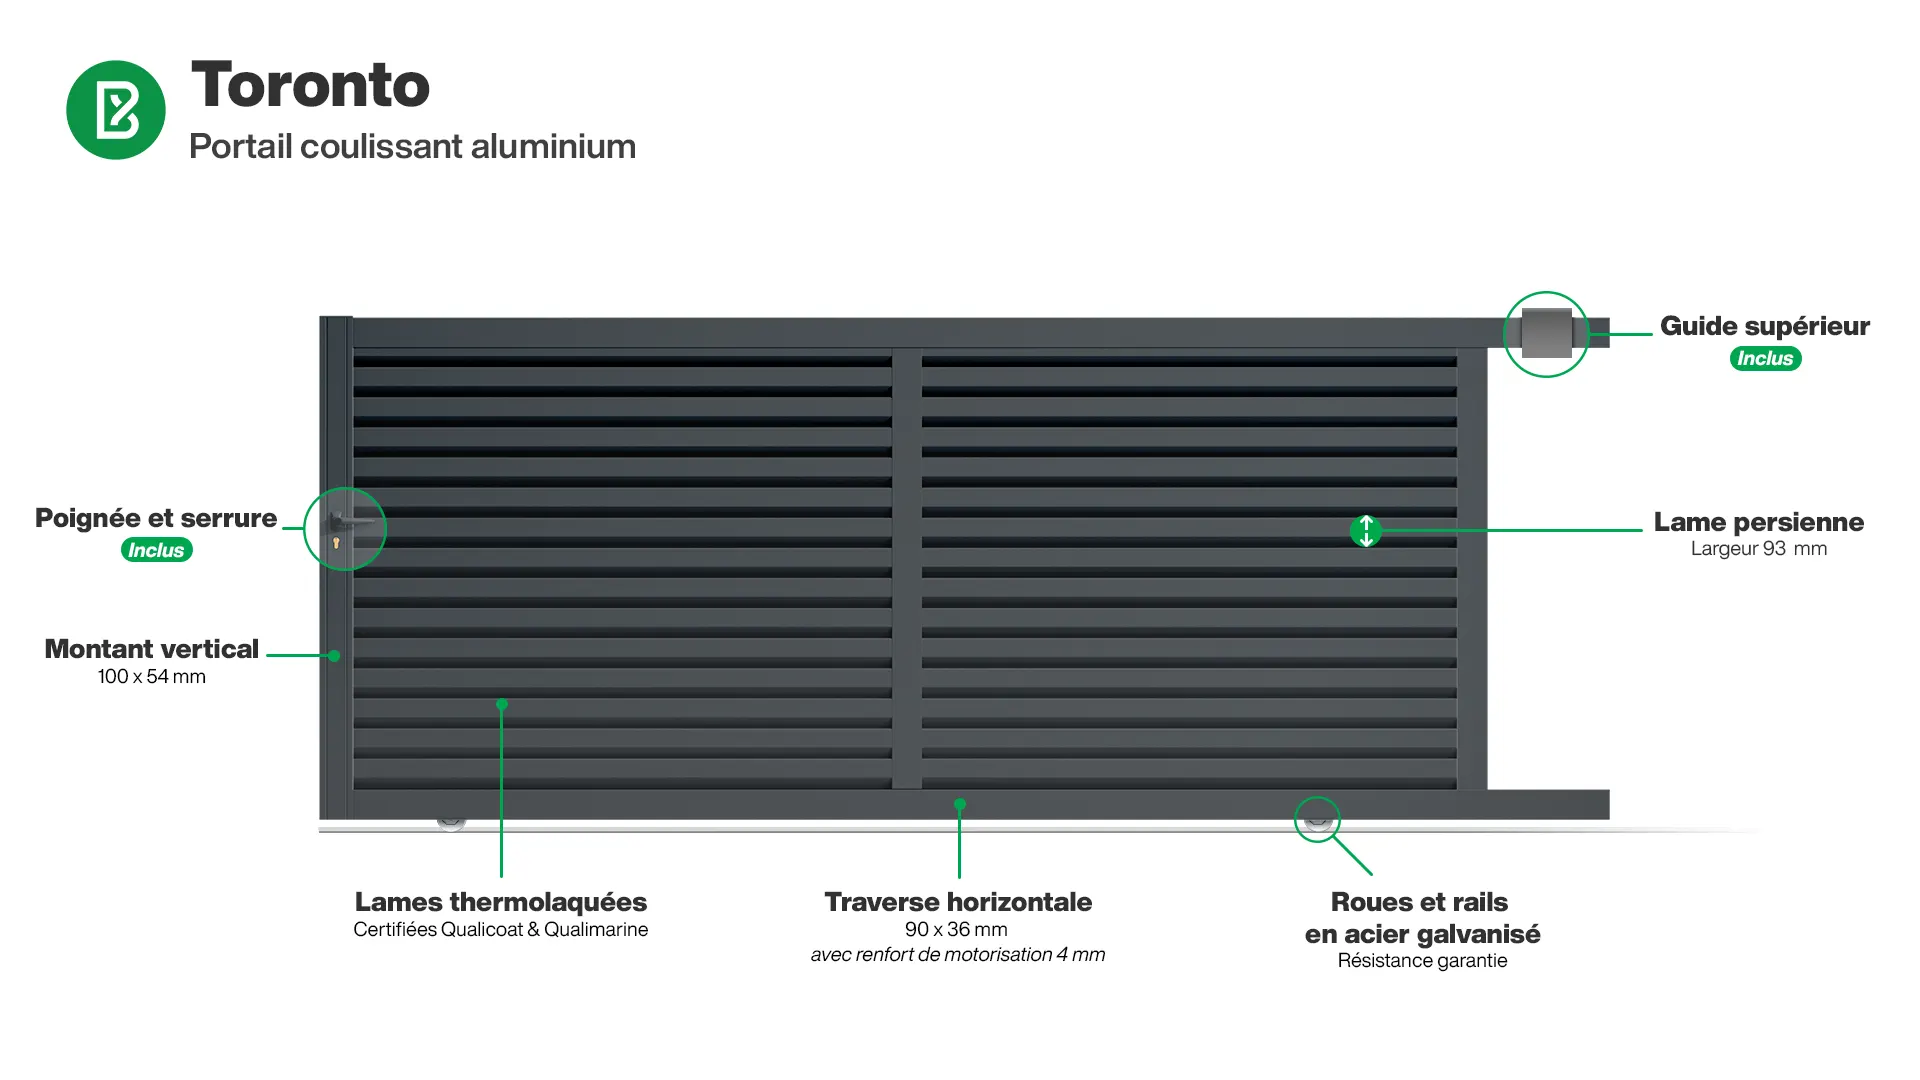 Portail : Infographie d'un portail coulissant aluminium modèle TORONTO